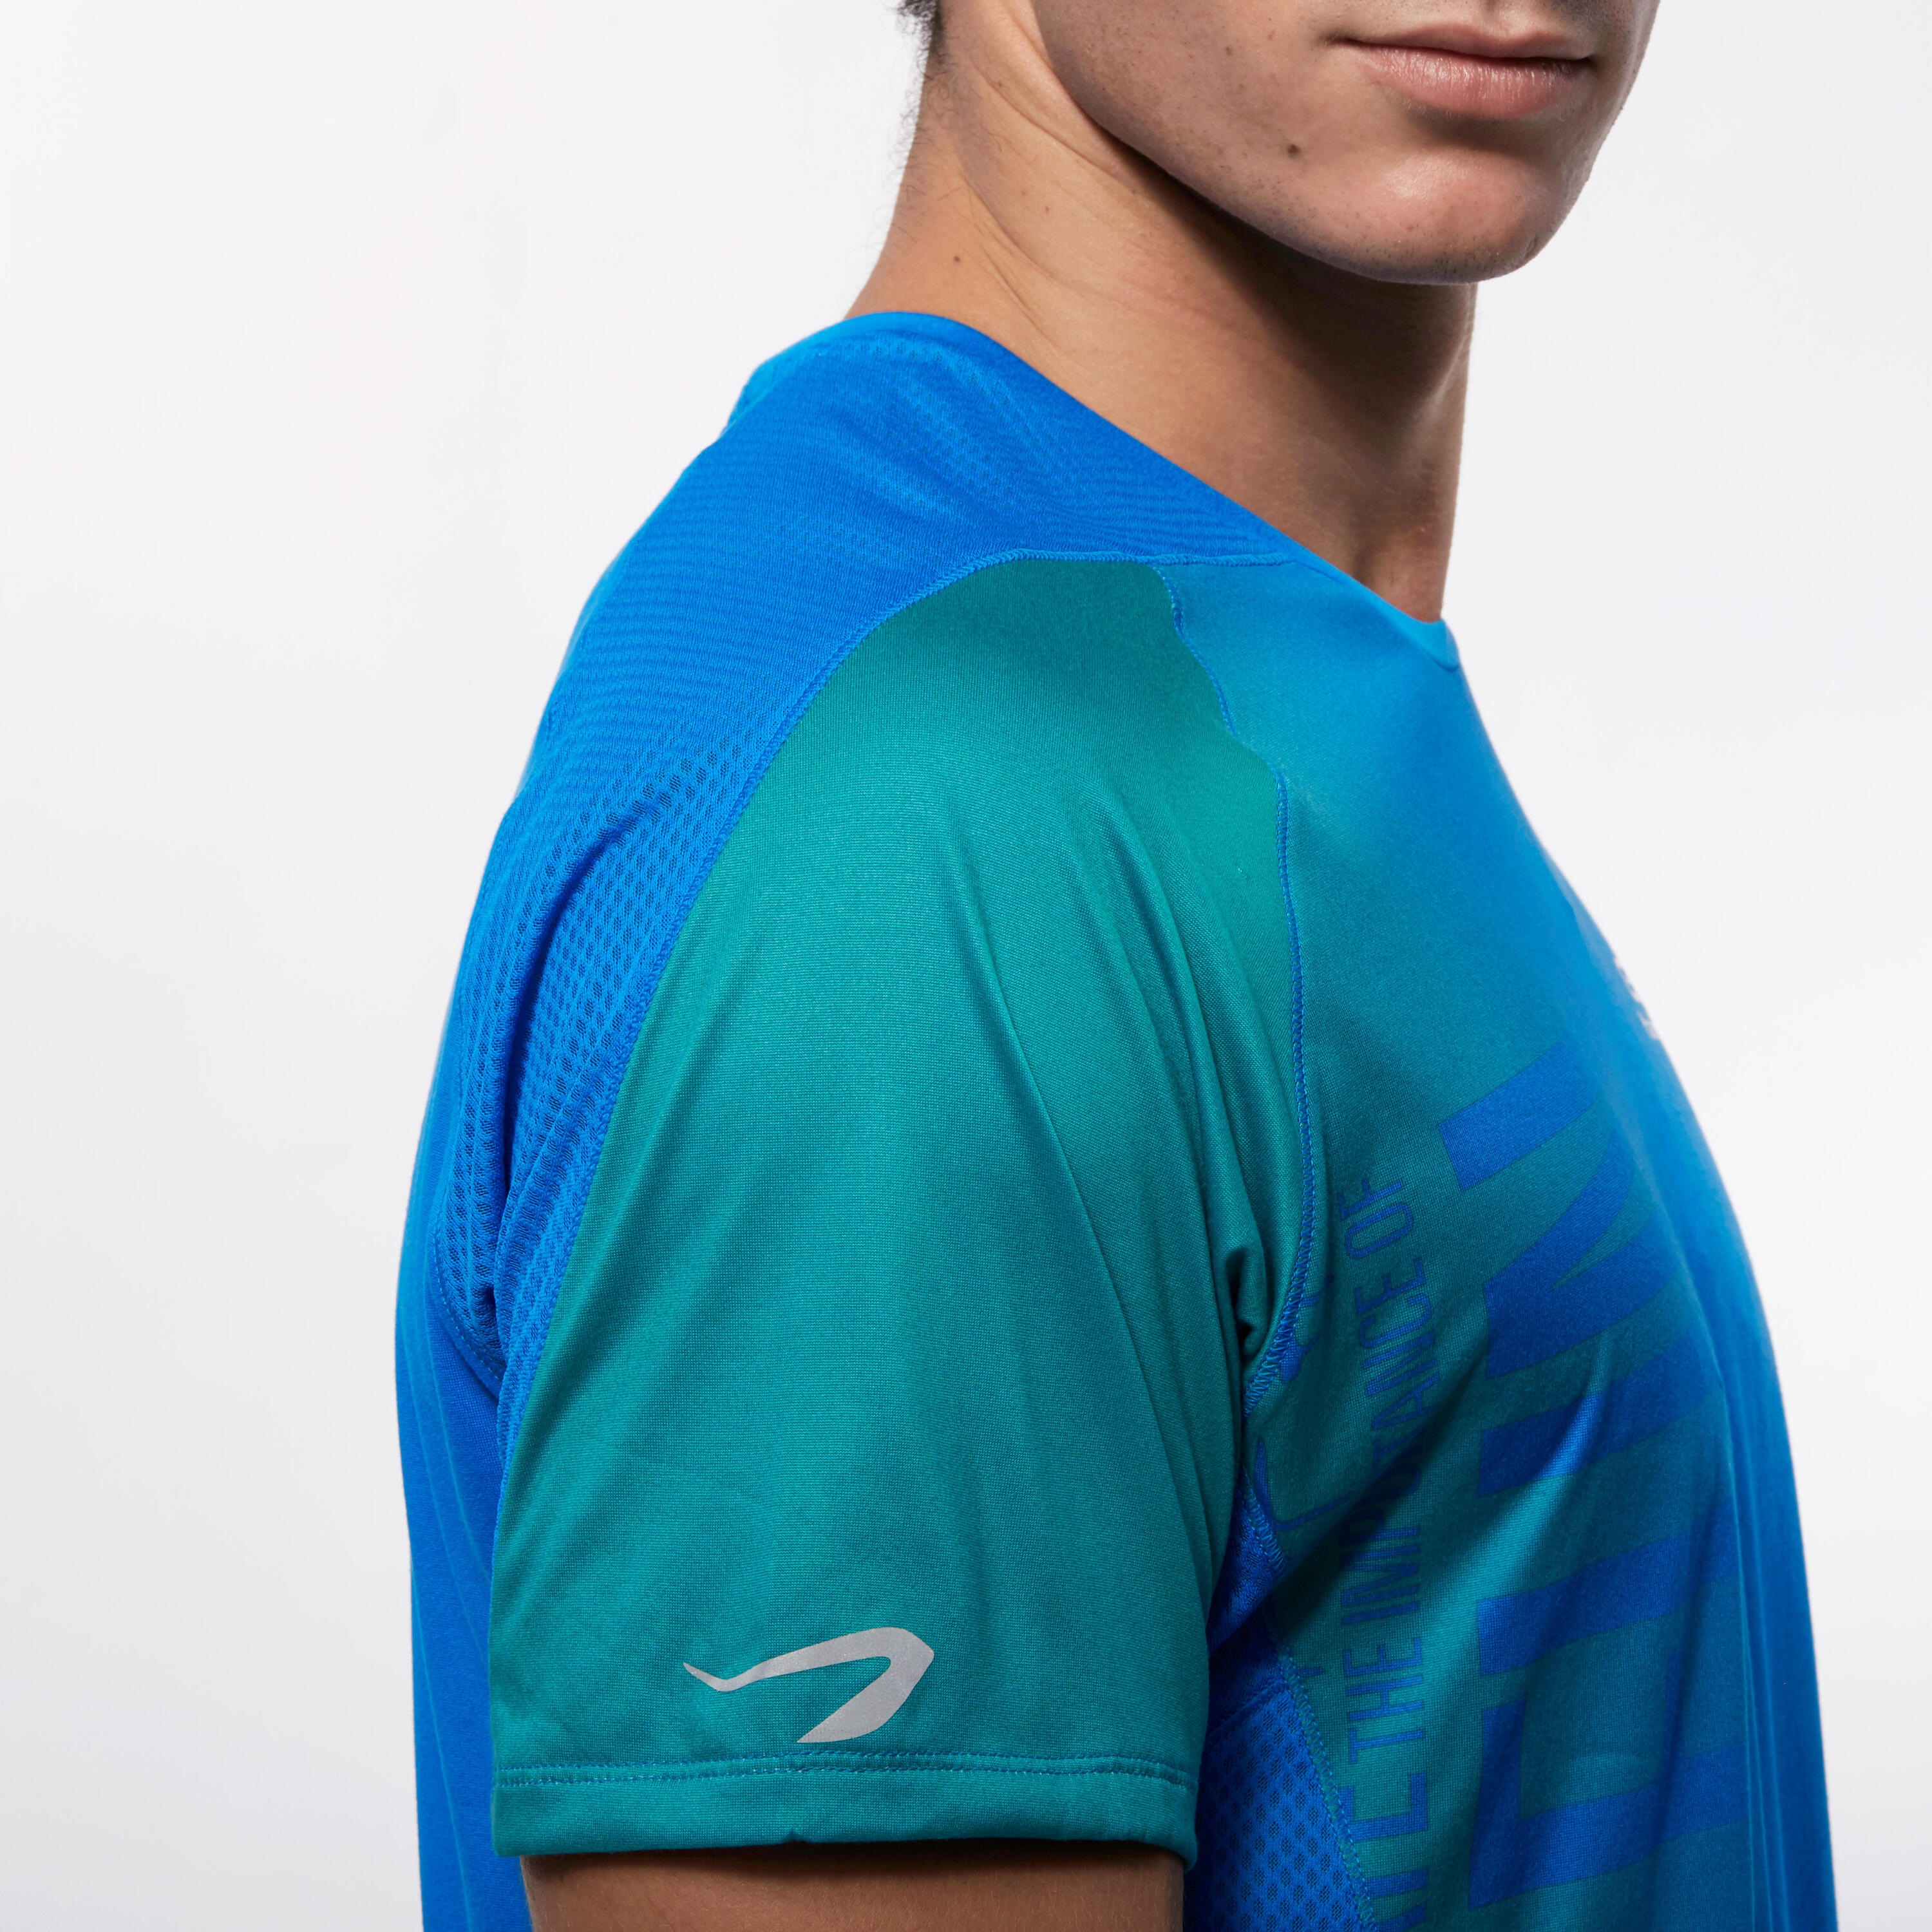 Elio Print Men's Running T-shirt - blue puzzle 6/21